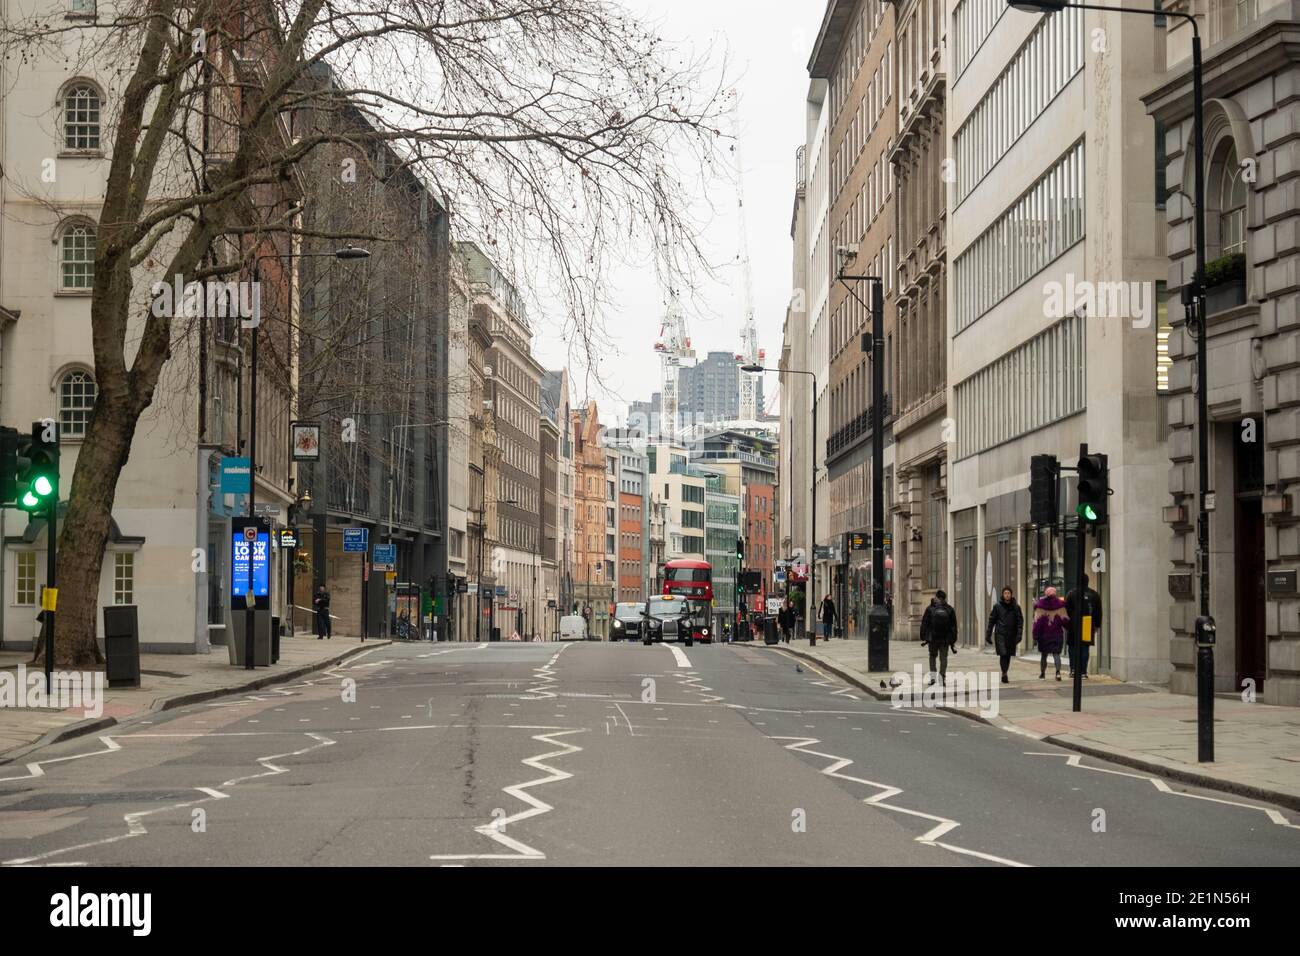 Londra- High Holborn, una città simbolo di Londra strada vuota a causa del blocco Covid 19 Foto Stock